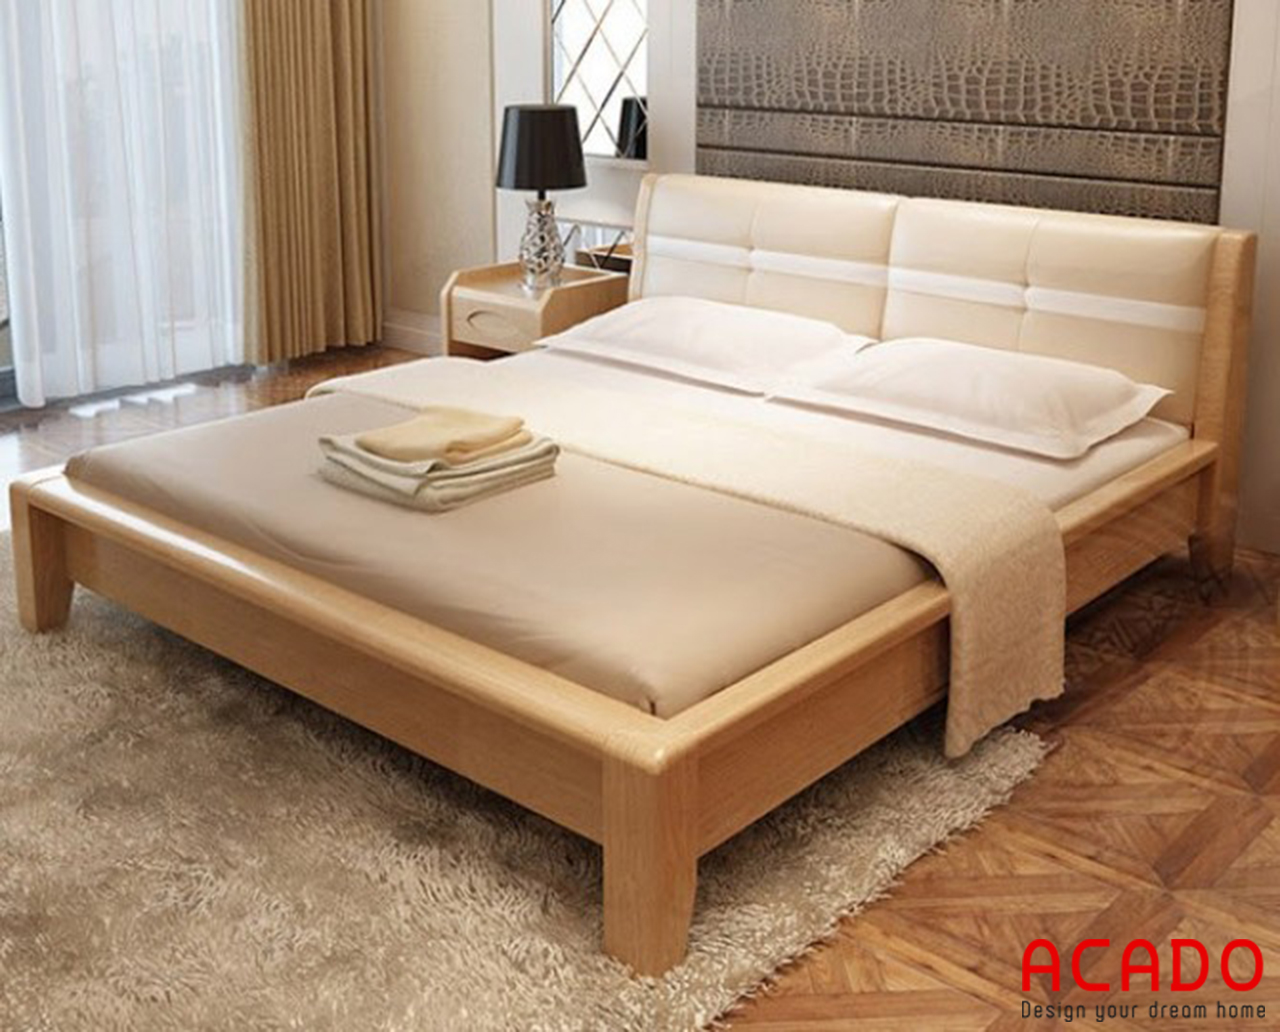 Mẫu gường ngủ gỗ sồi nga thiết kế hiện đại, trẻ trung